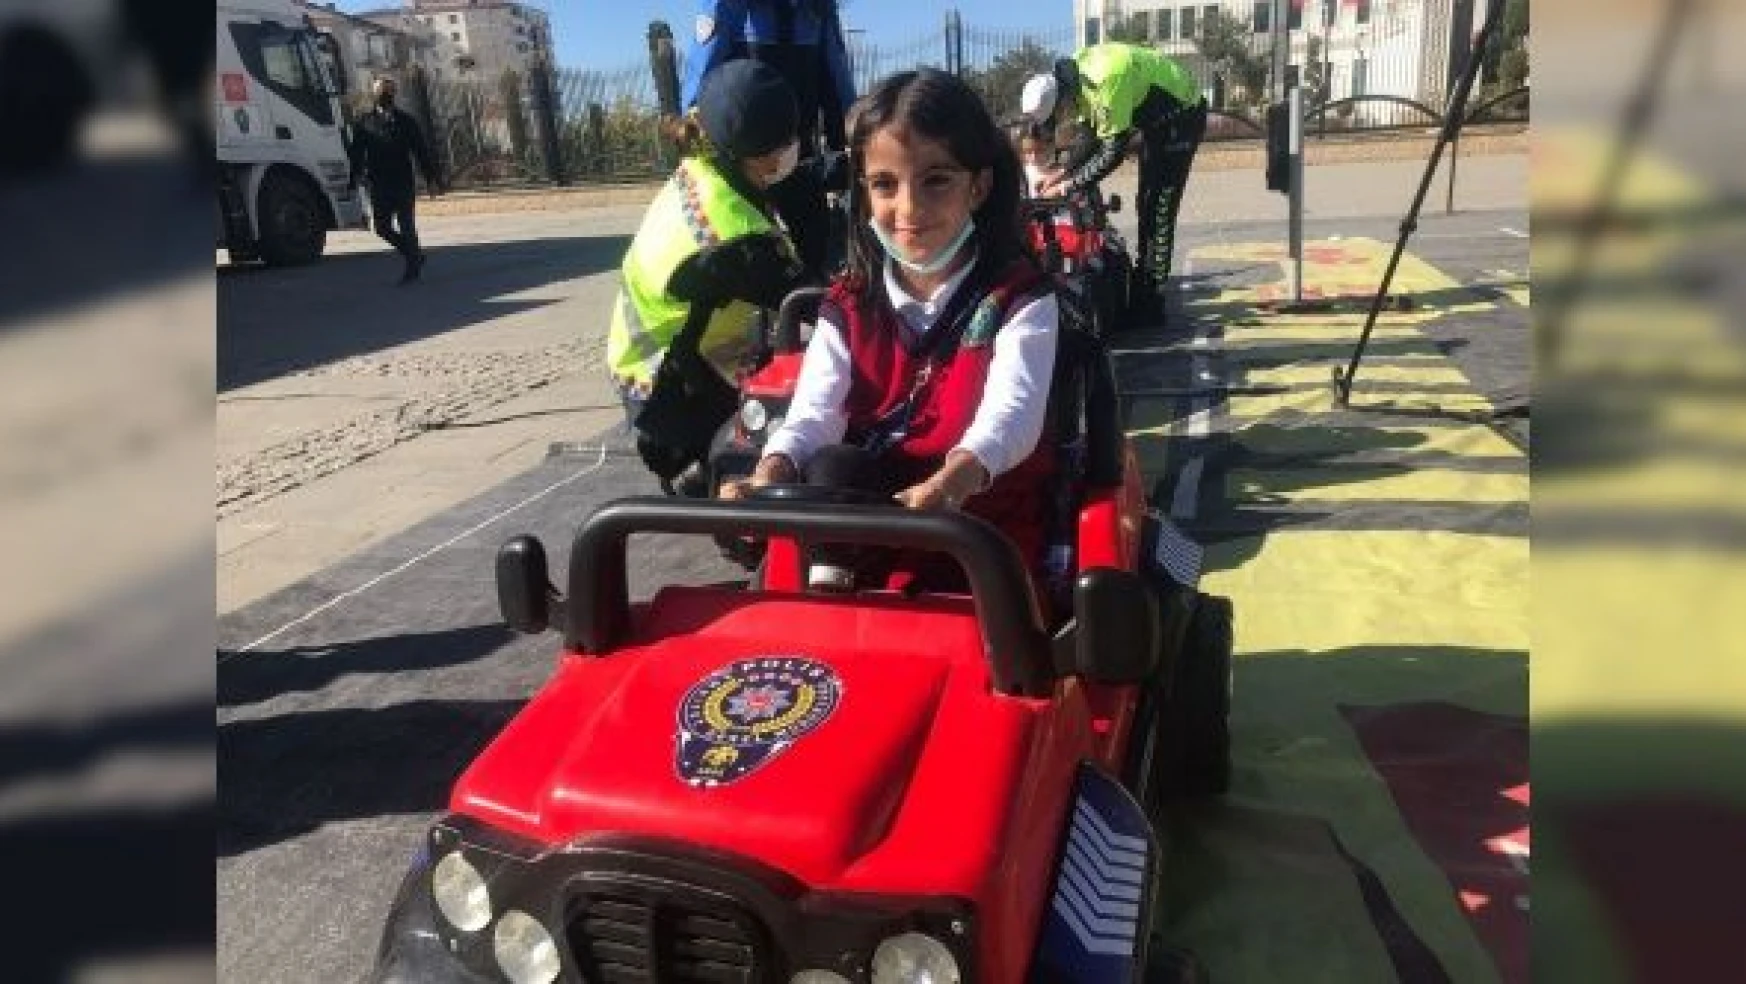 Mobil Trafik Eğitim TIR'ı Elazığ'da öğrencilerle buluştu